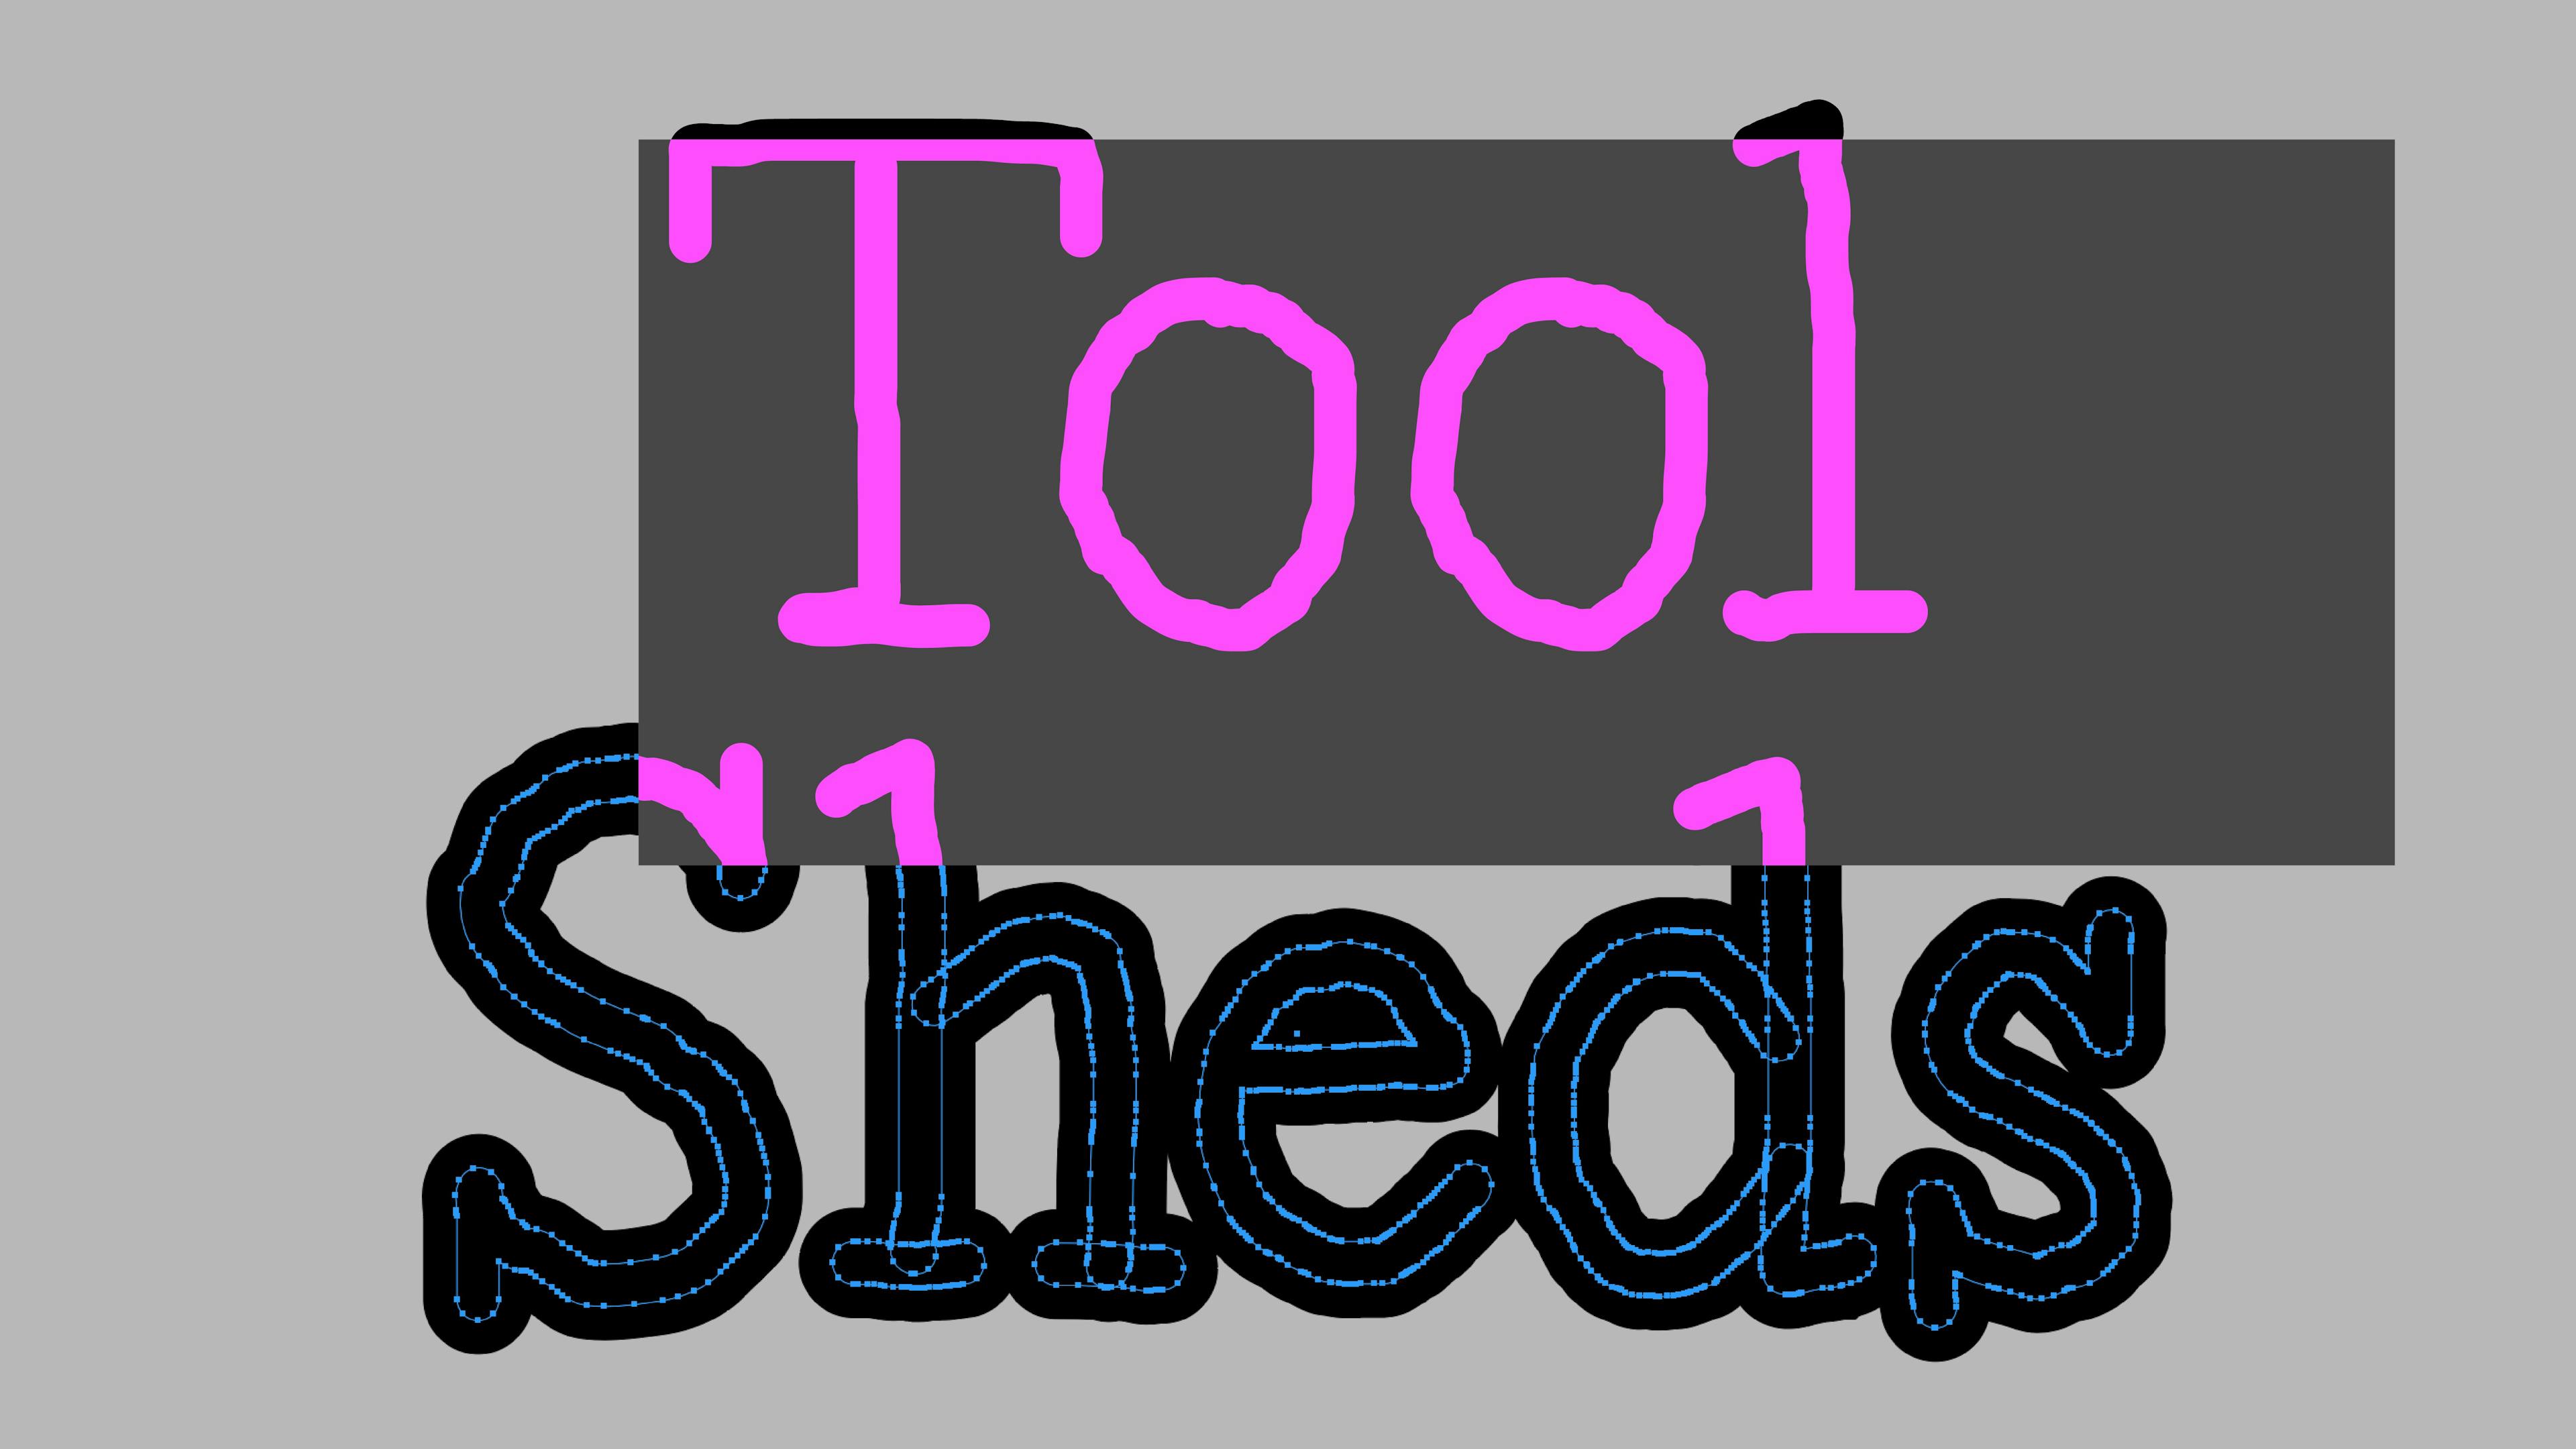 Tool Sheds. Graphic design: Maud Vervenne